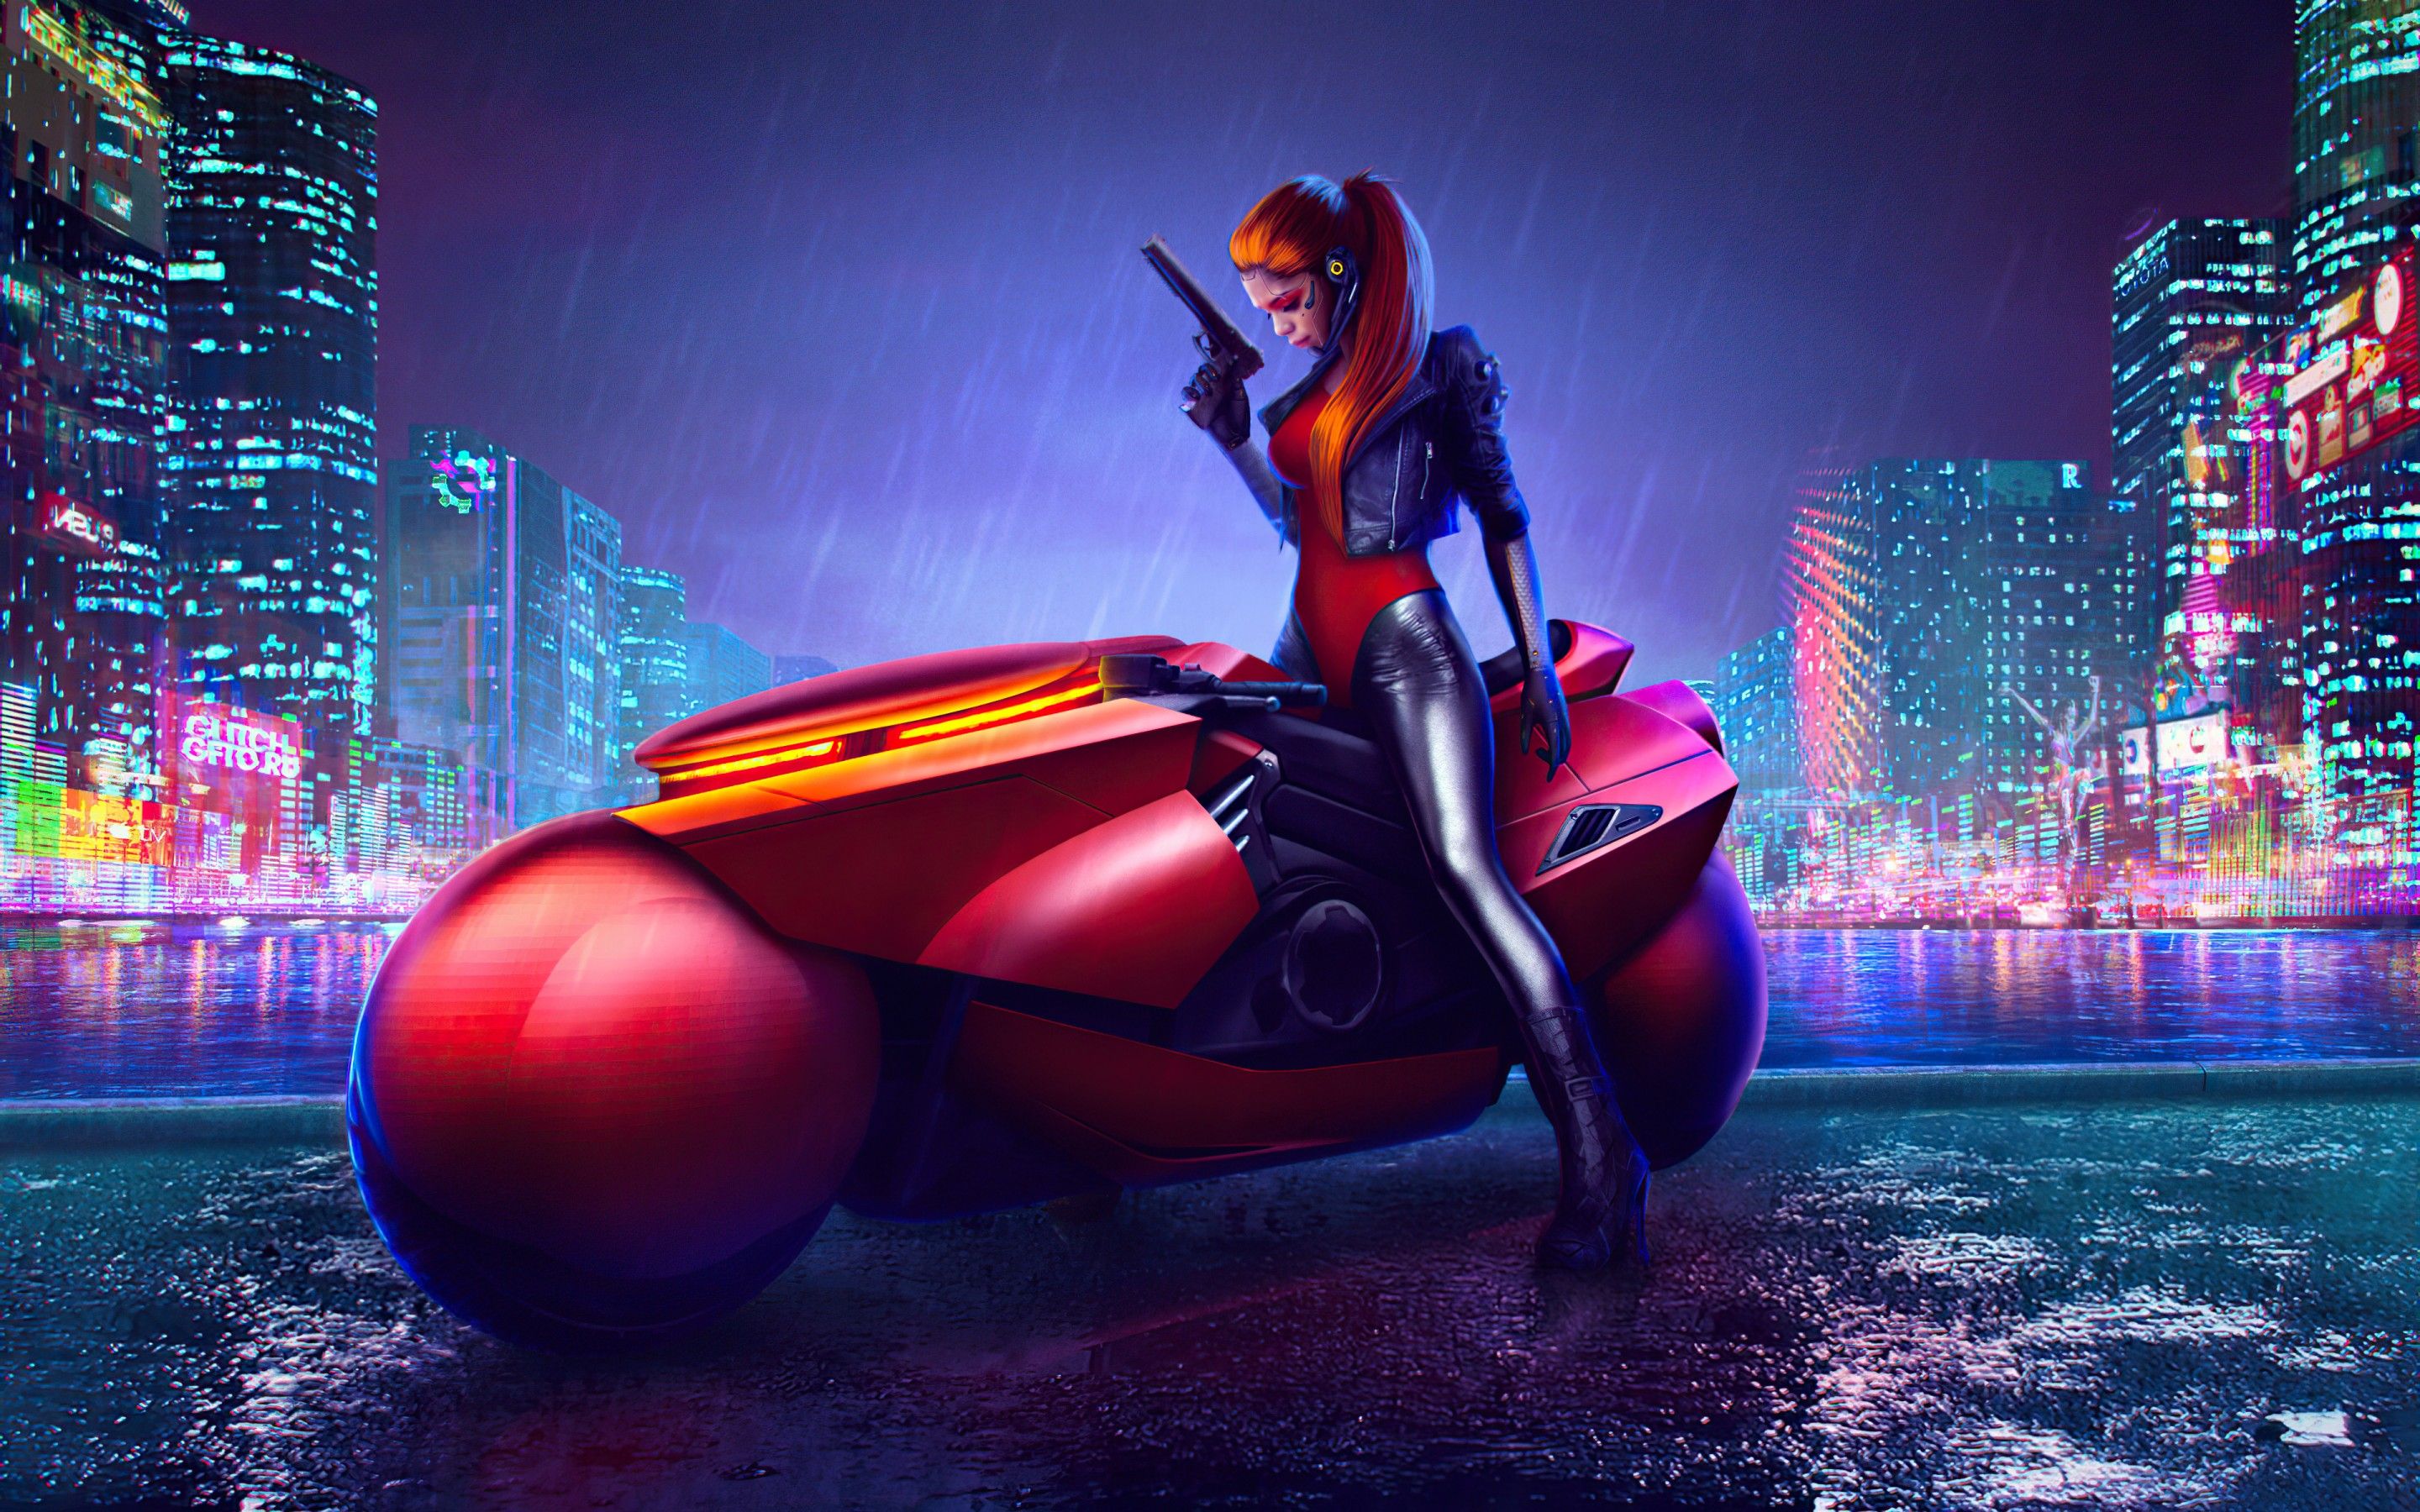 Cyberpunk girl 4K Wallpaper, Cyberpunk bike, Digital art, Graphics CGI